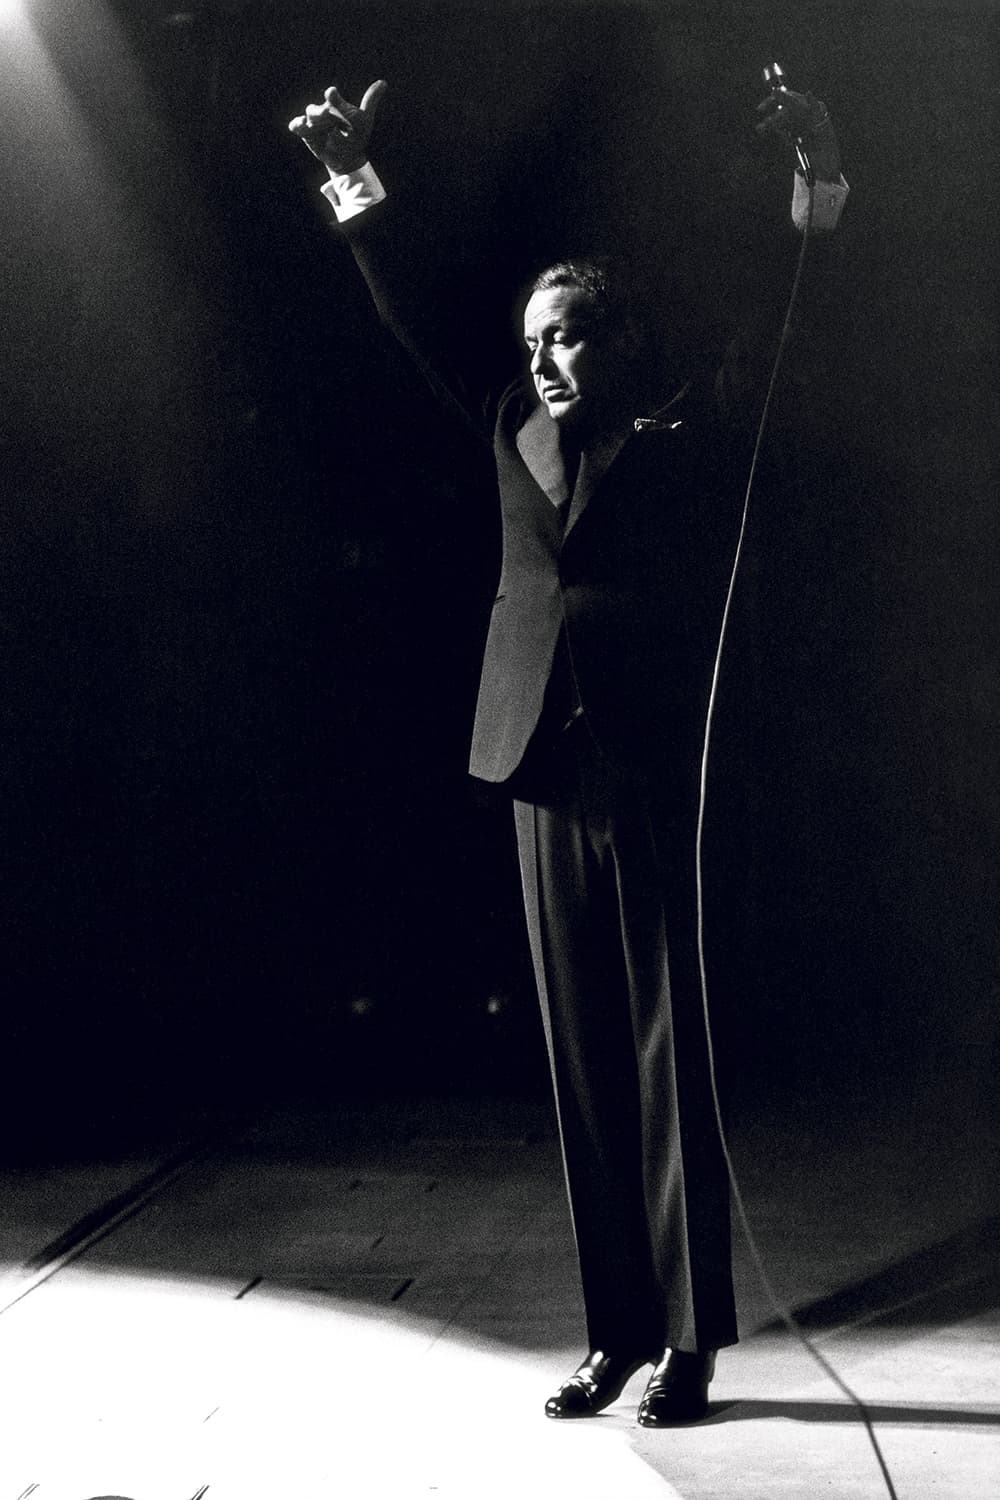 Terry O'Neill Frank Sinatra